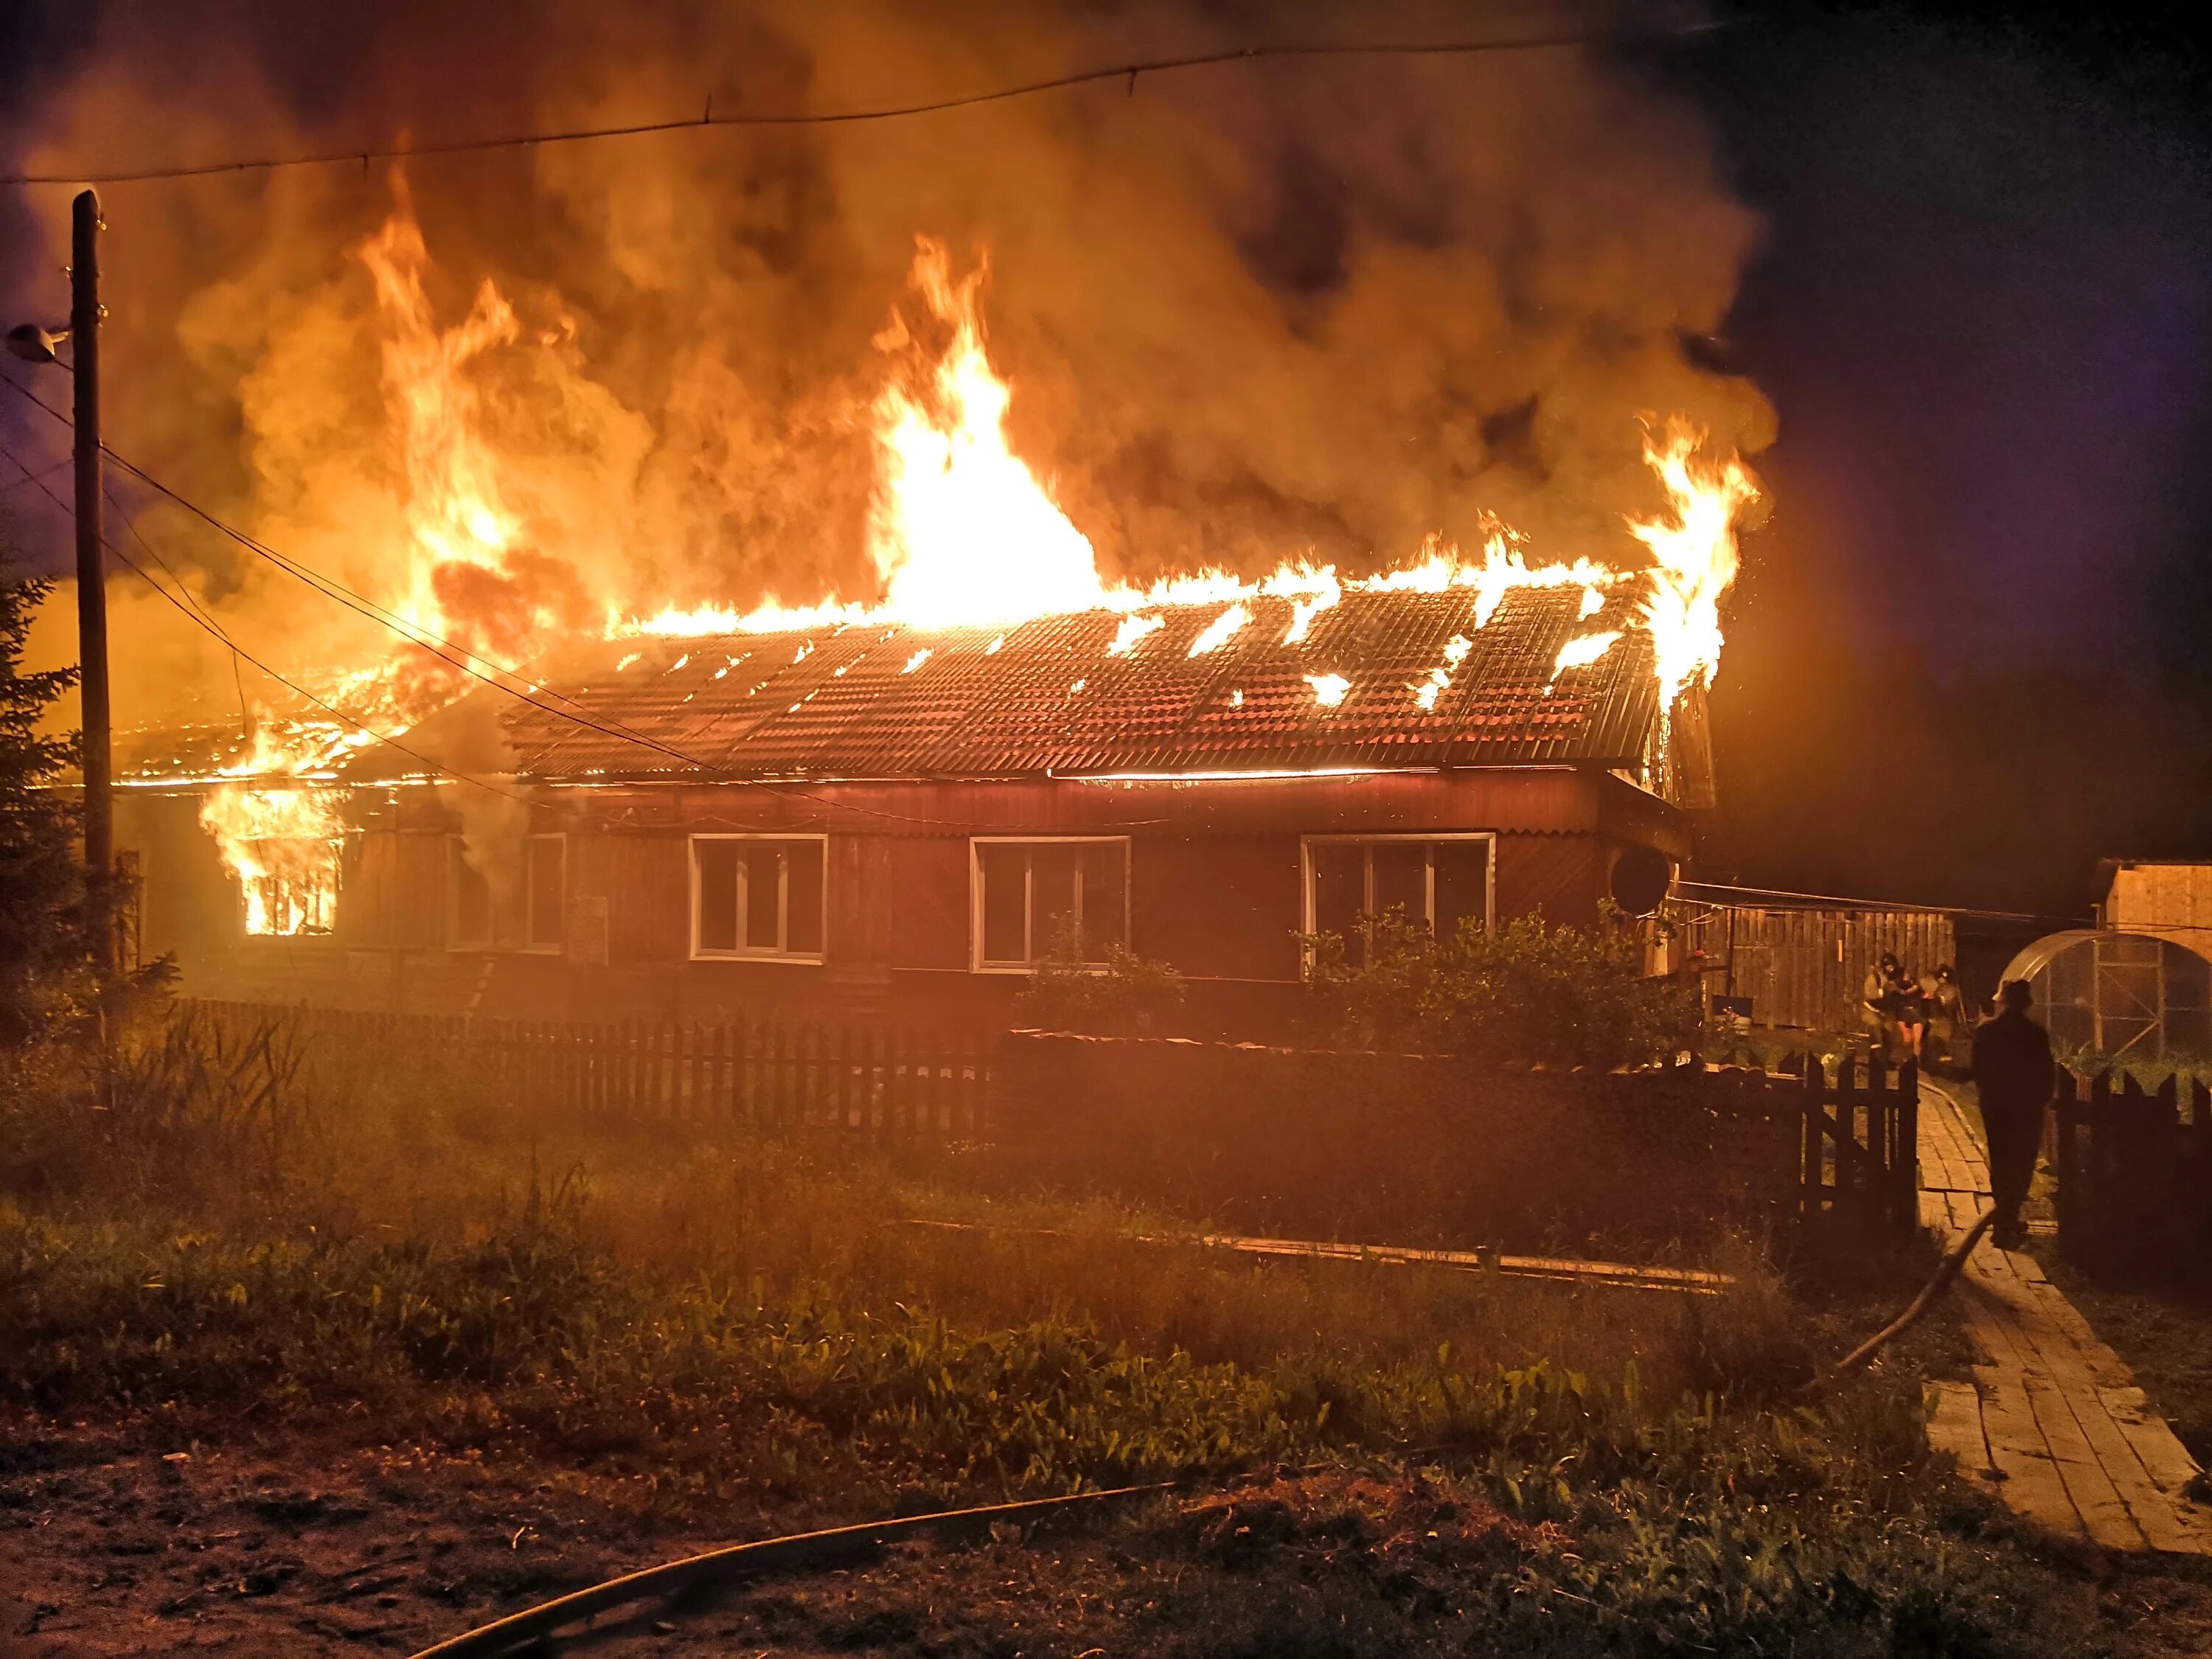 Что случилось в доме сегодня. Посёлок Опарино Кировской области. Пожар в Опарино Кировской области. Пожар в Опарино Кировской области сегодня. Горящий дом.